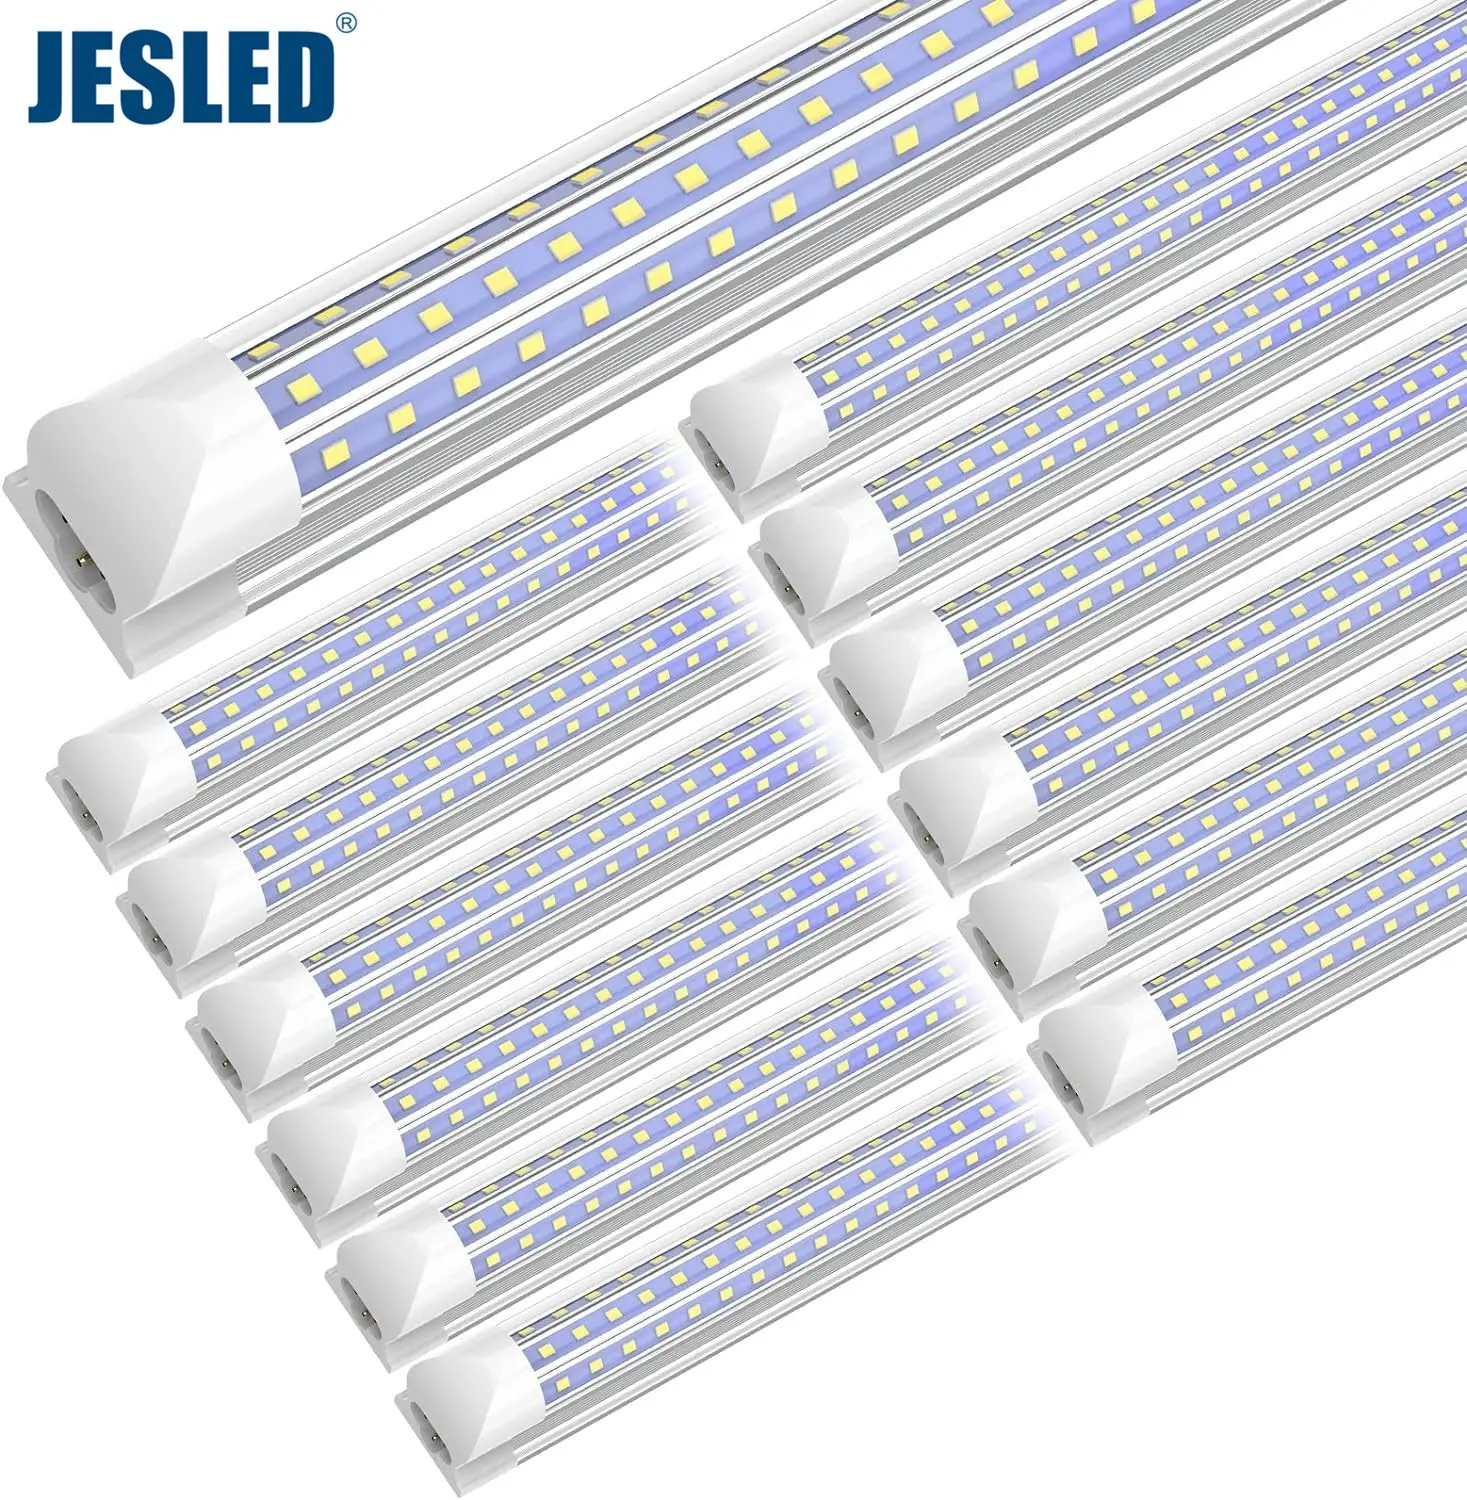 JESLED LED 튜브 전등 2ft/4ft/5ft/6ft/8ft T8 led 튜브 D자형 고출력 투명 커버 연결 가능 8 발 차고 상점 조명